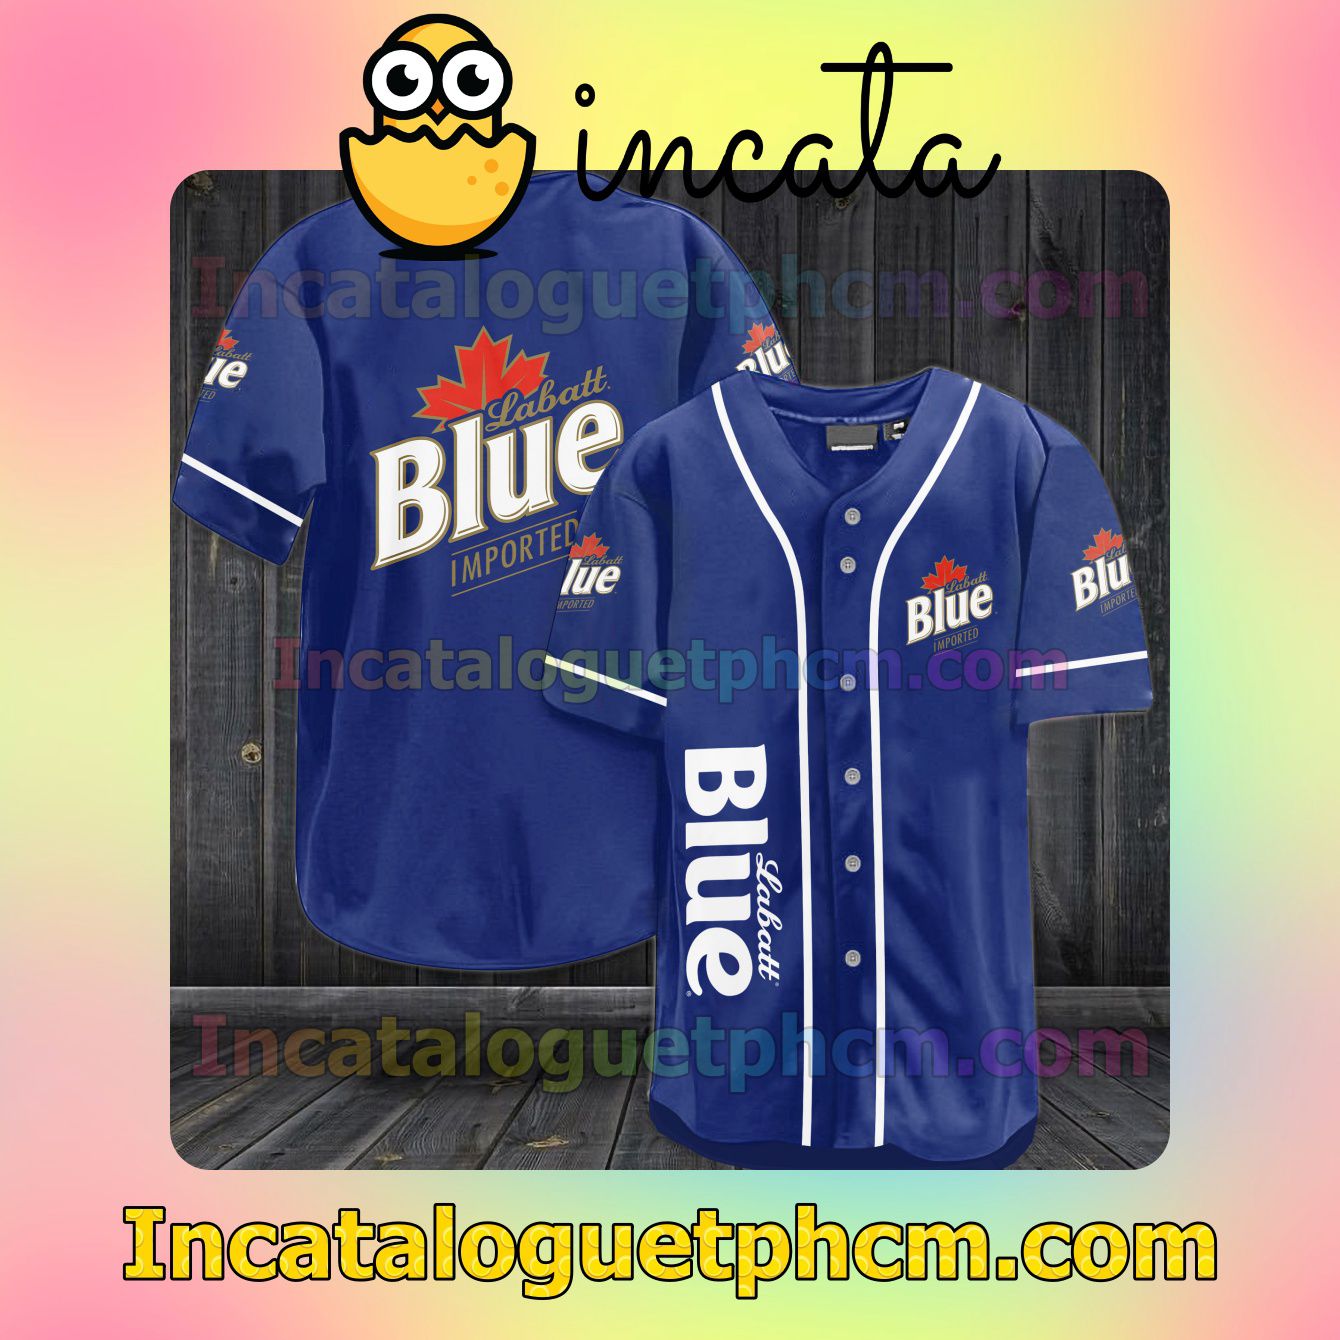 3D Labatt Blue Imported Baseball Jersey Shirt